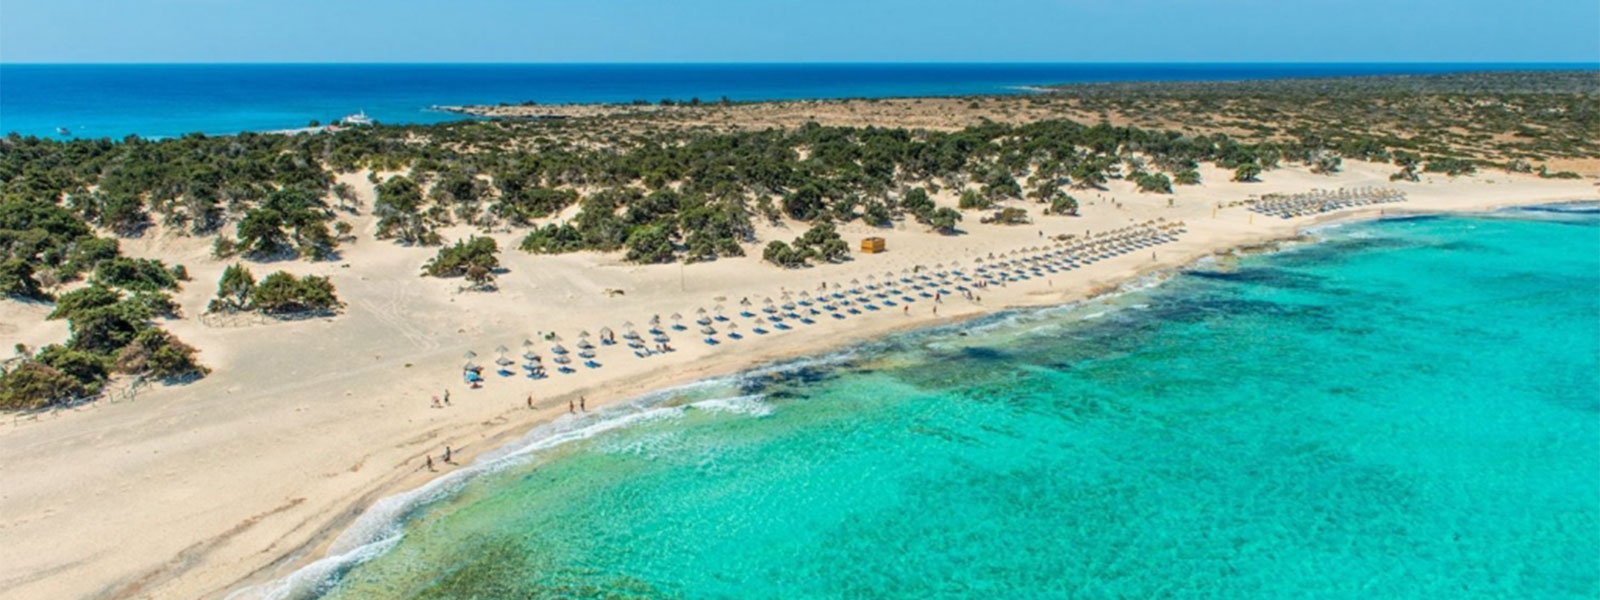 Το ελληνικό νησί με μία από τις πιο εξωτικές παραλίες στη χώρα (βίντεο)